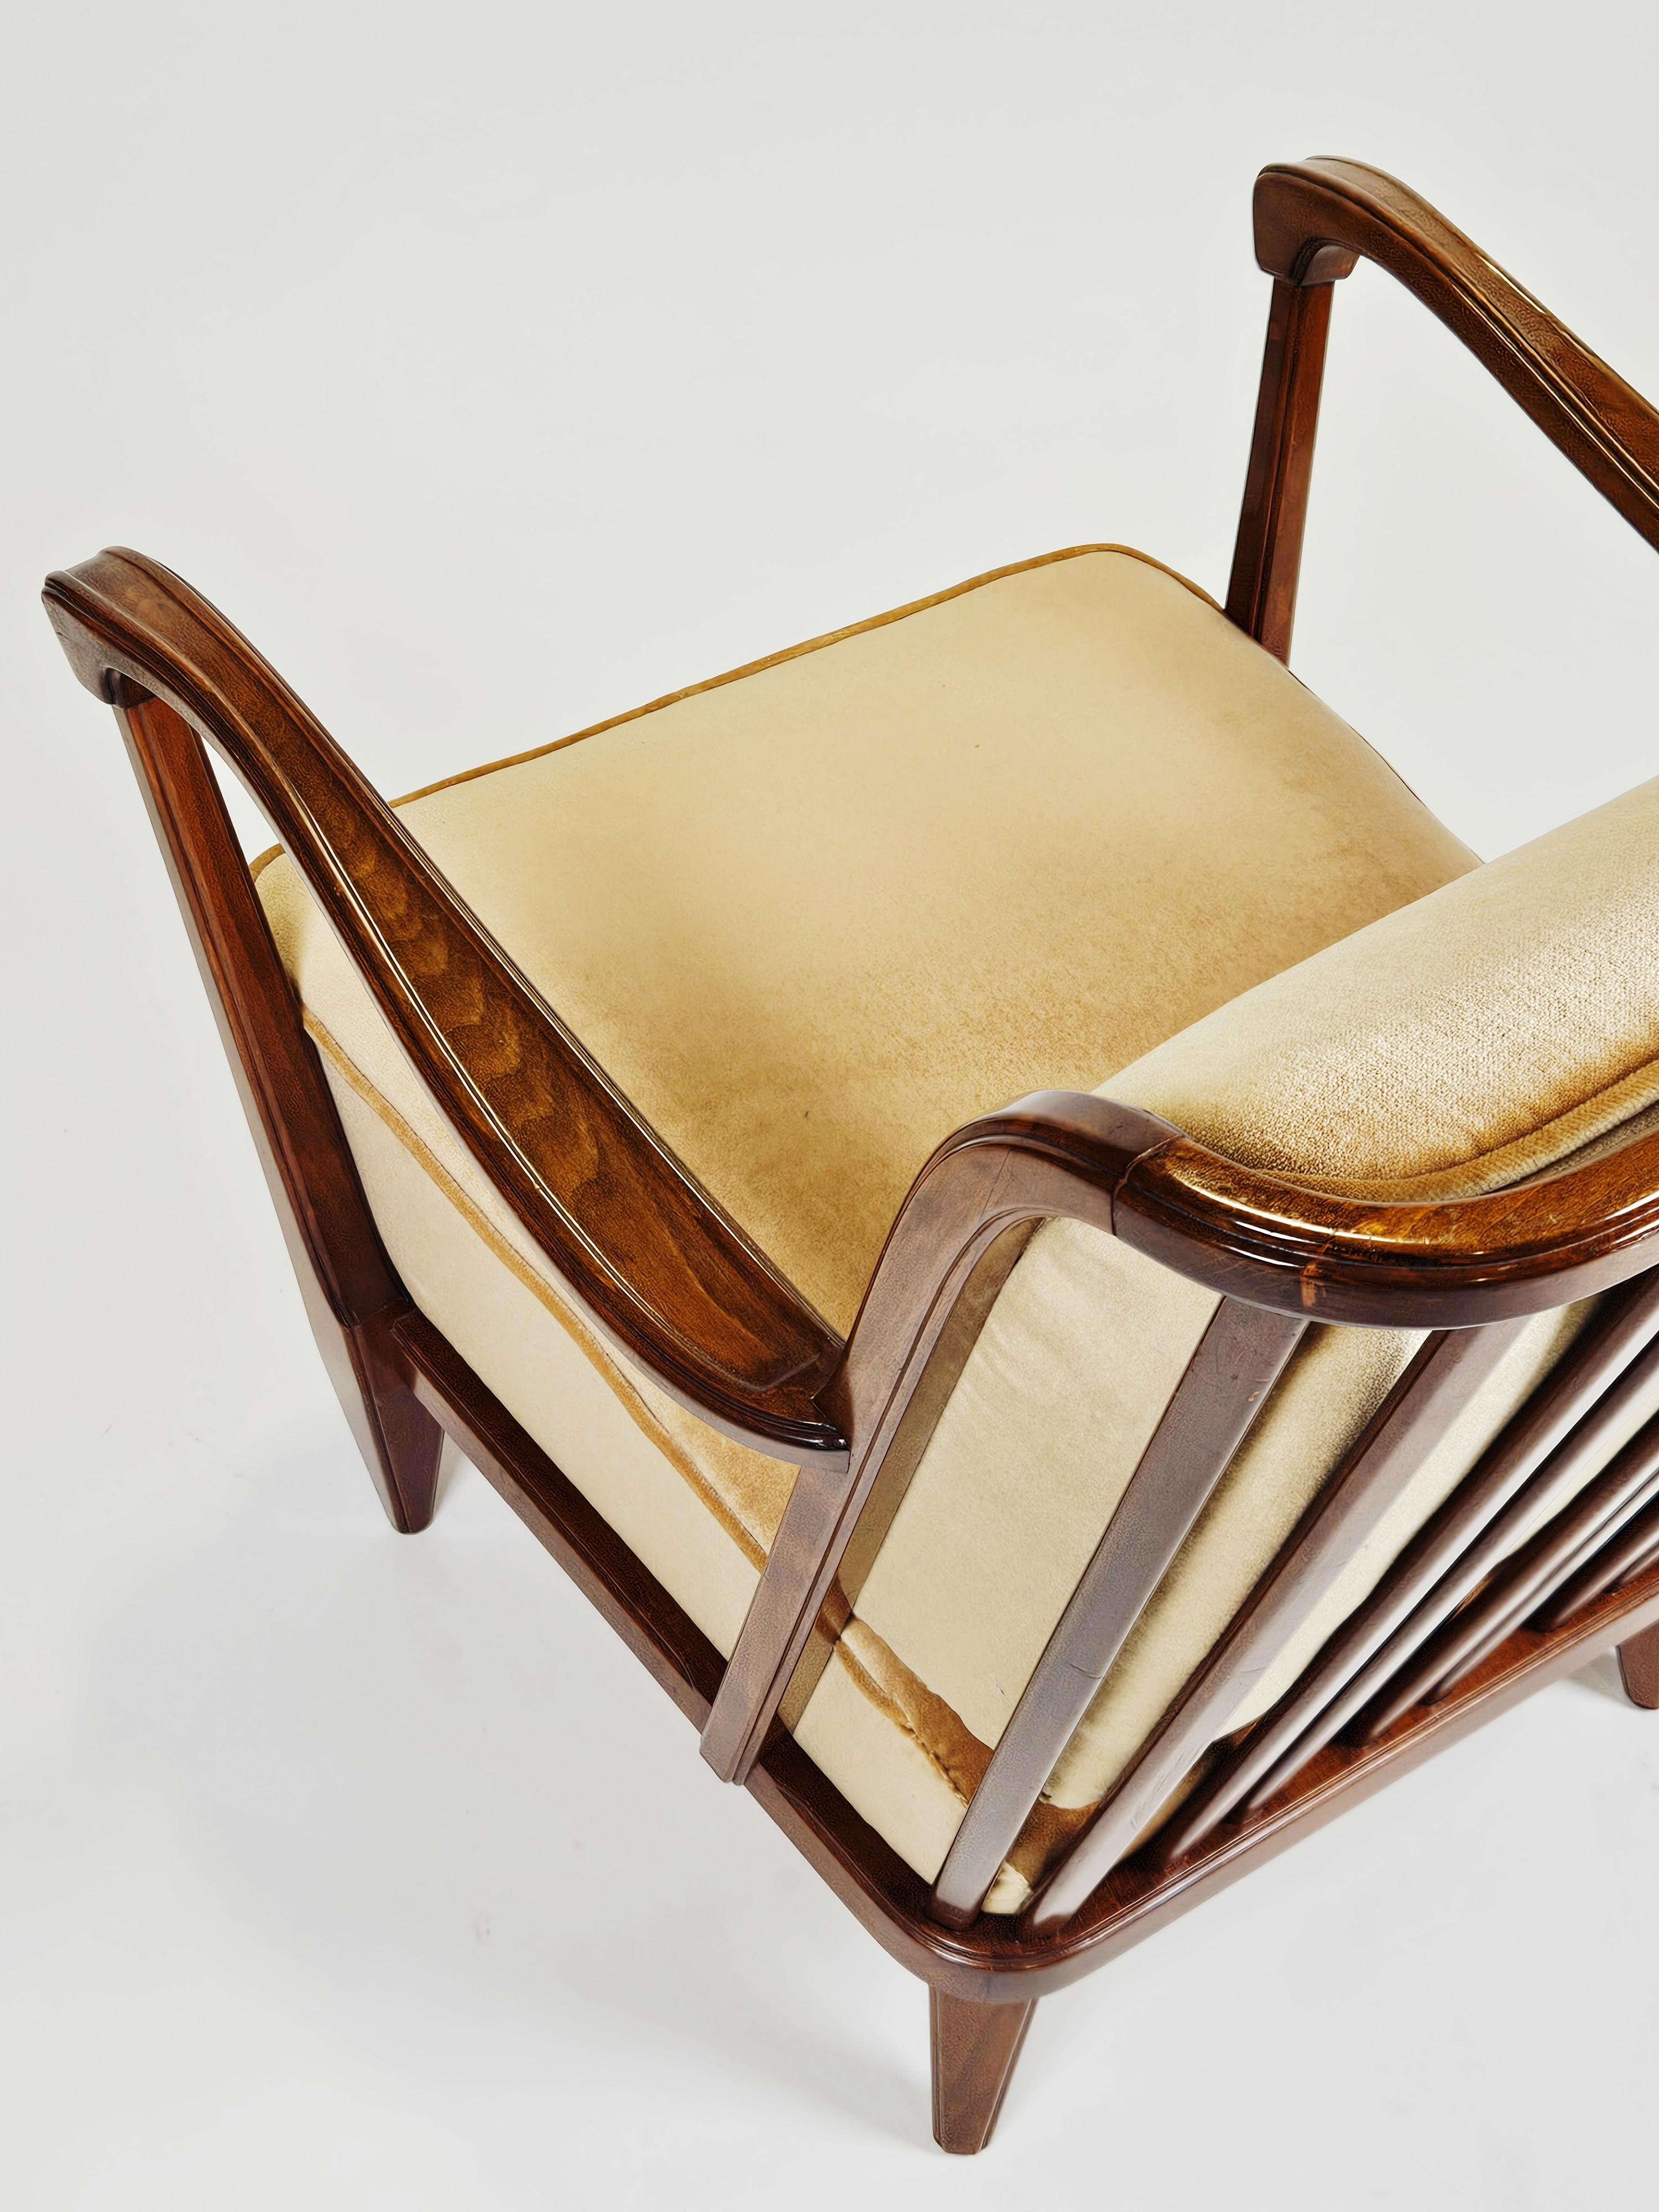 20th Century Scandinavian modern armchairs by Svante Skogh, Sweden, 1950s For Sale